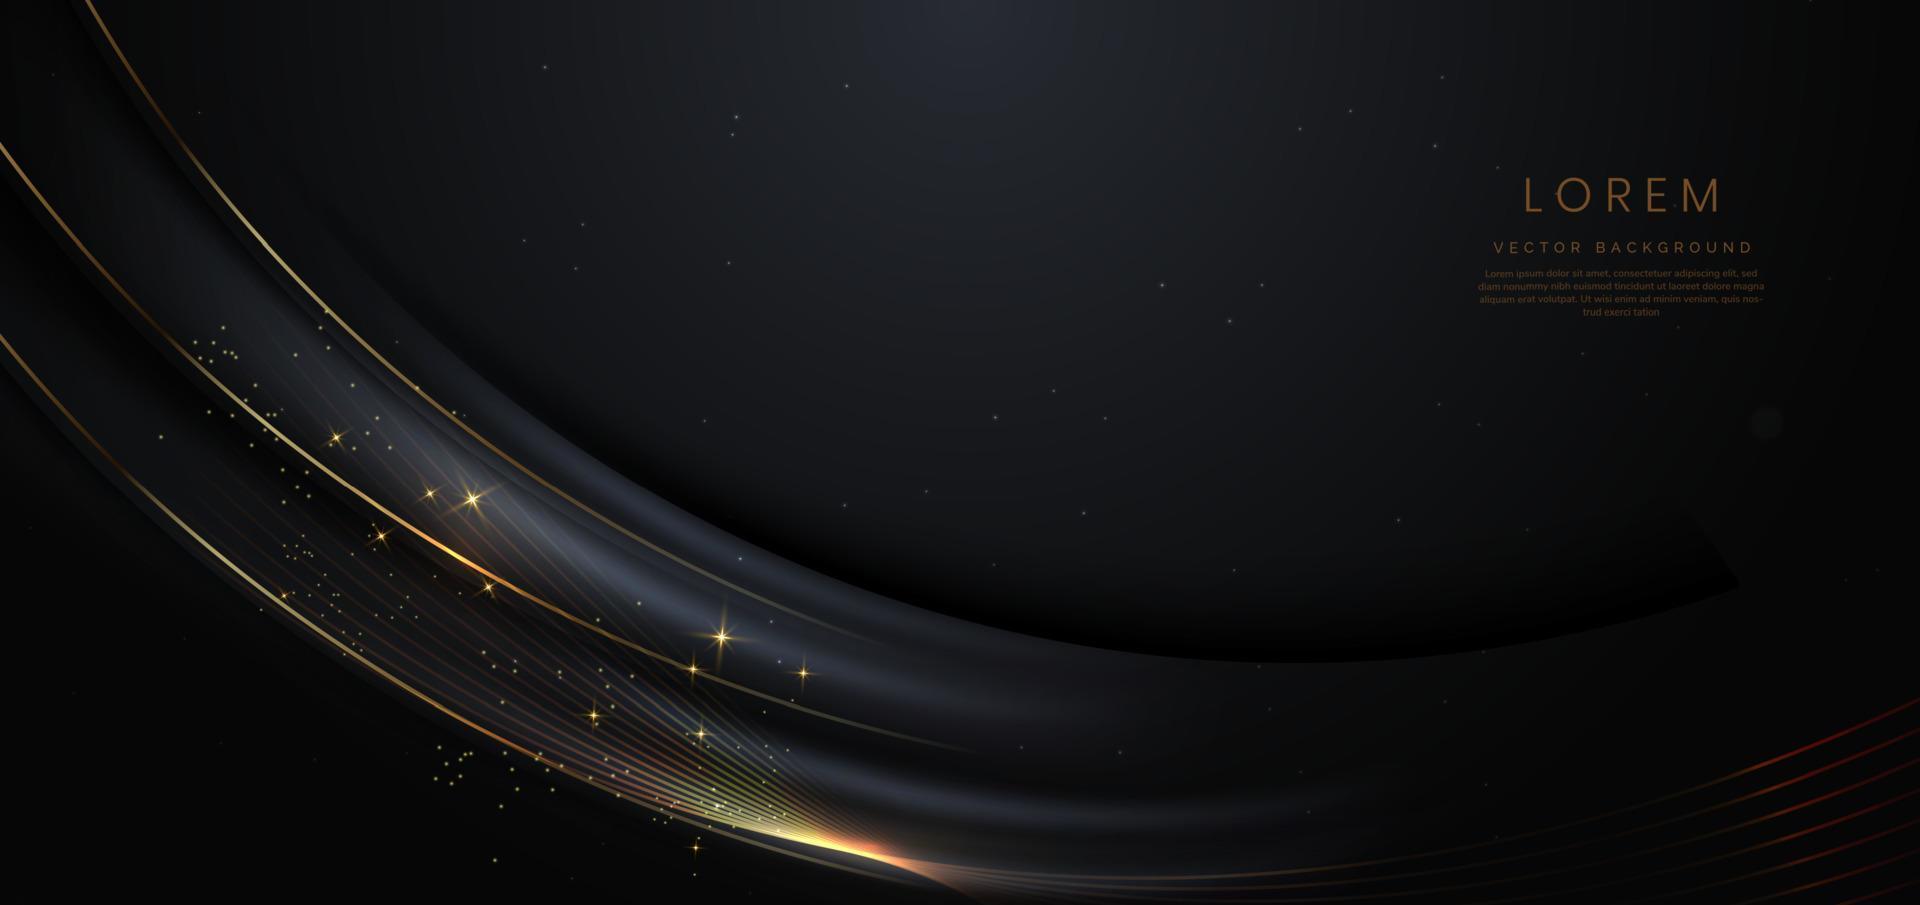 curva preta de luxo 3d abstrata com linhas de curva dourada de borda elegante e efeito de iluminação em fundo preto. vetor